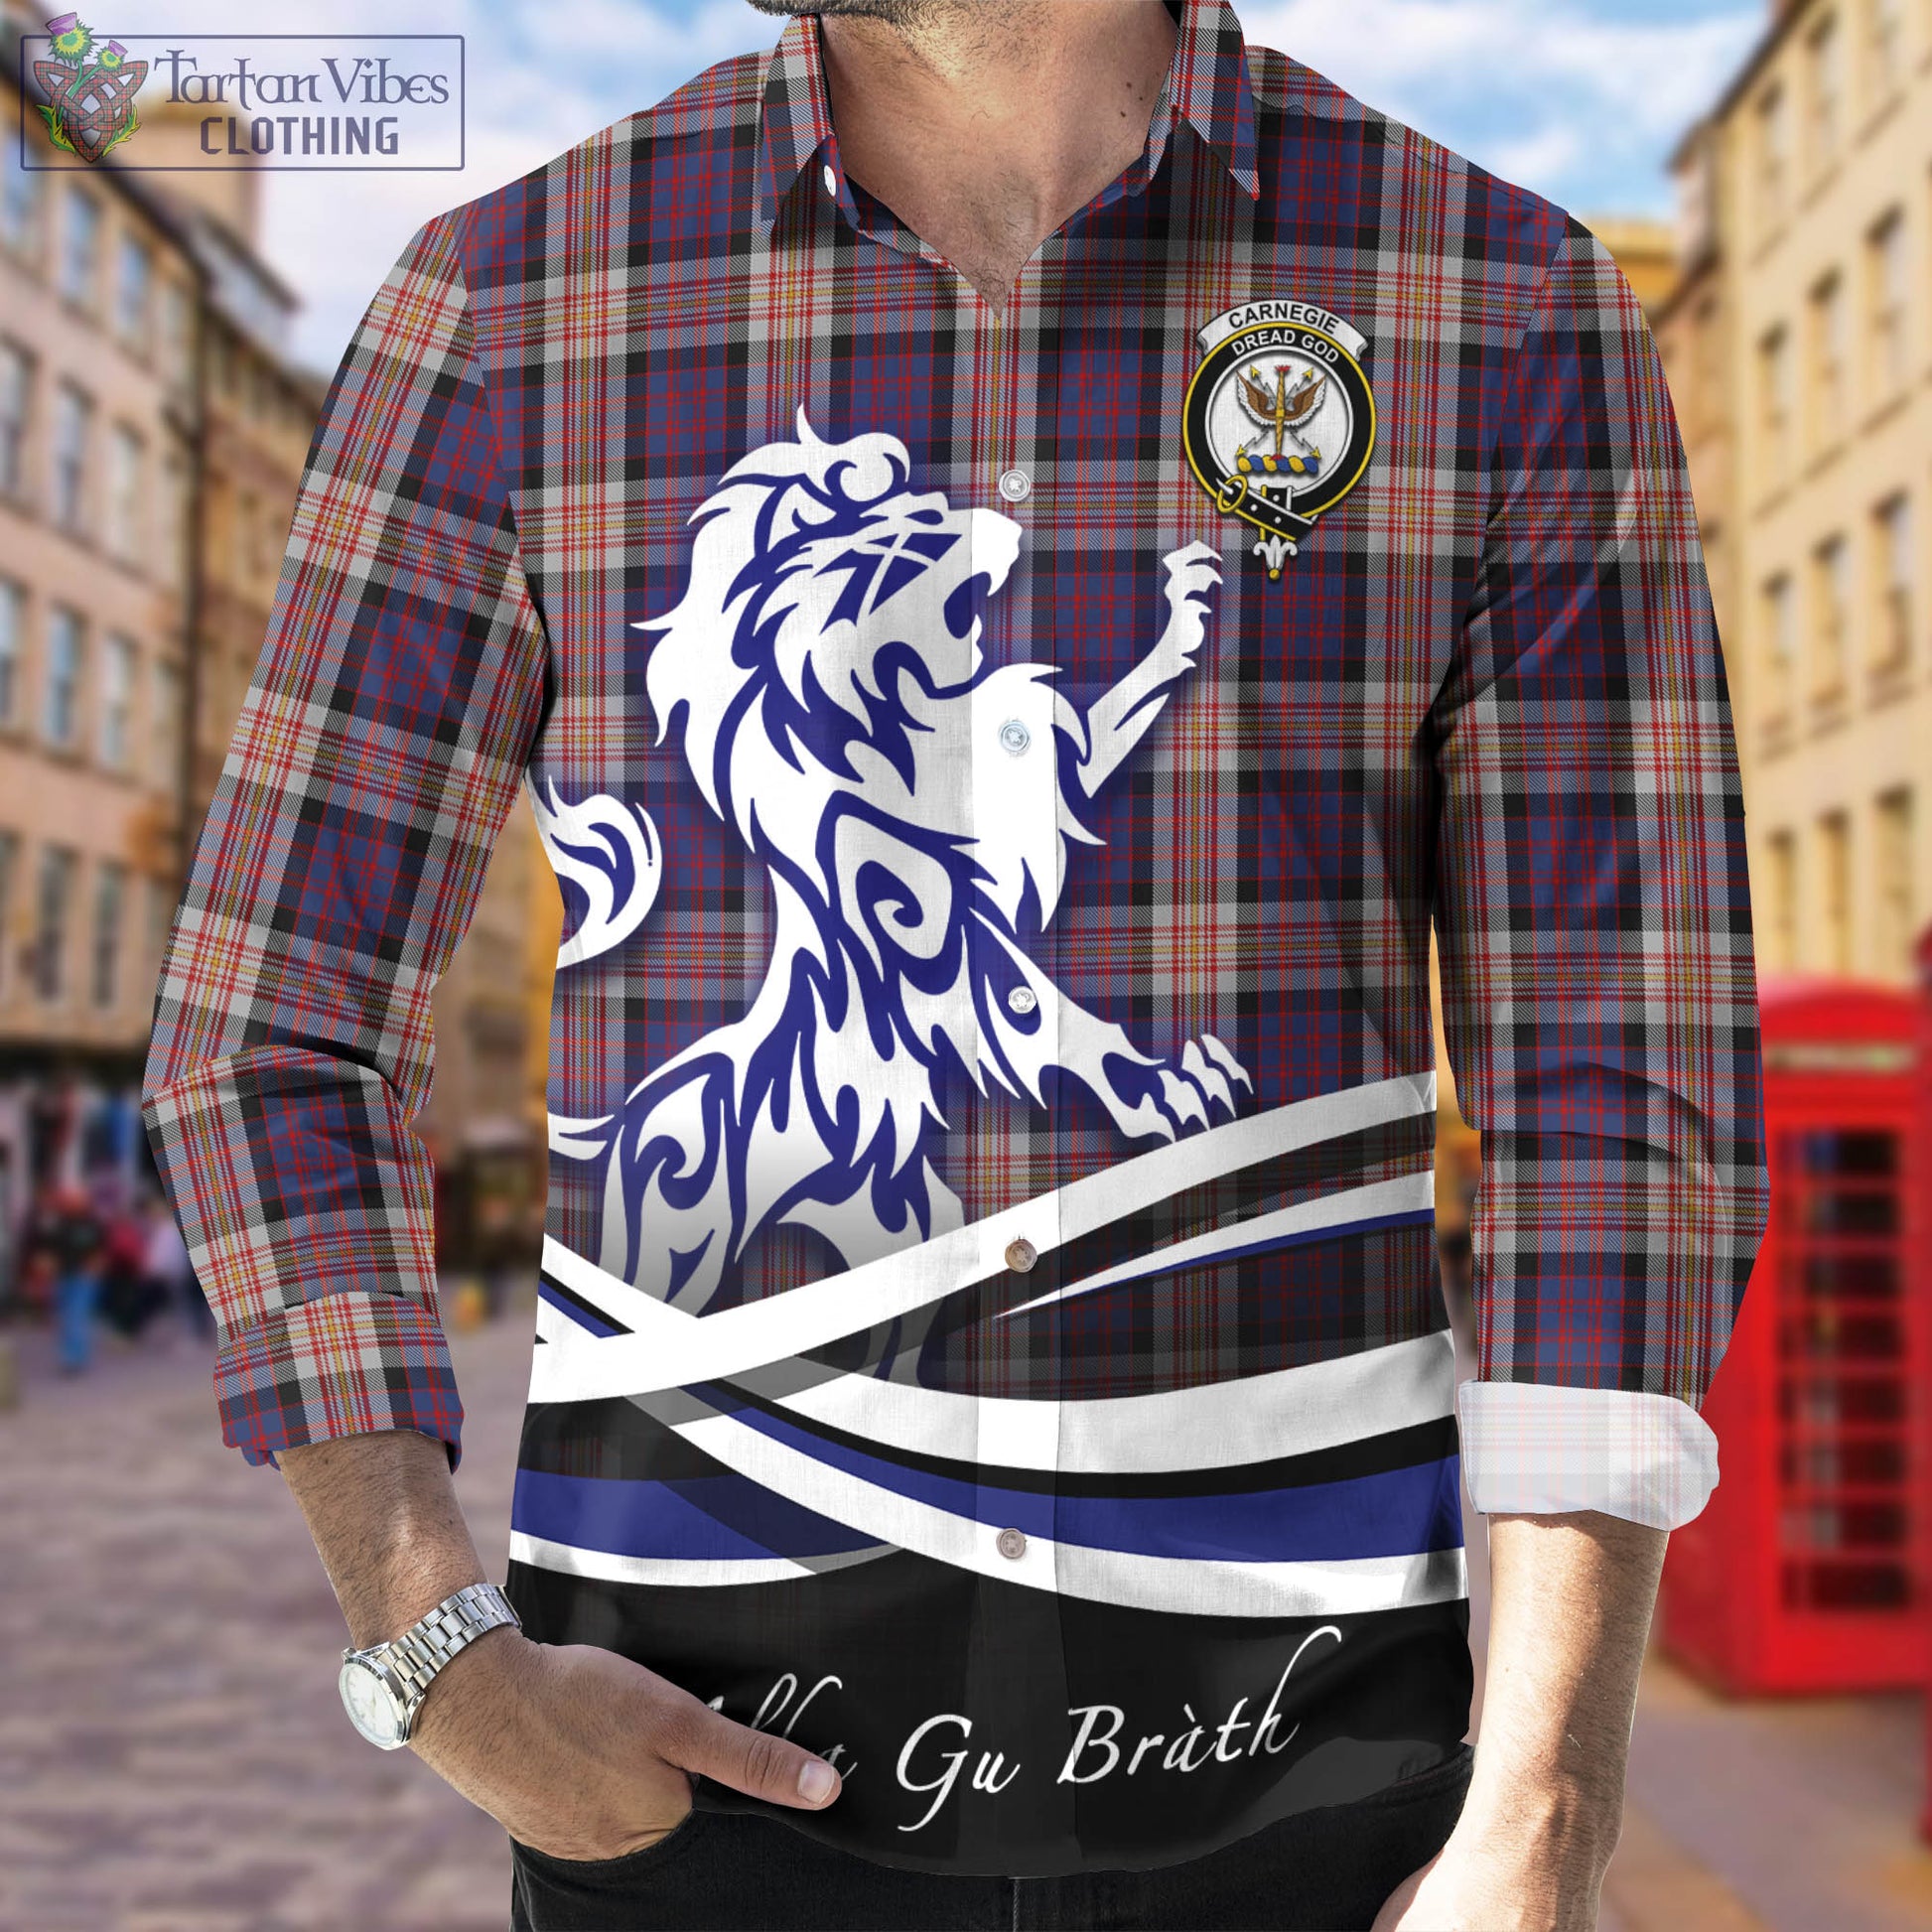 carnegie-tartan-long-sleeve-button-up-shirt-with-alba-gu-brath-regal-lion-emblem